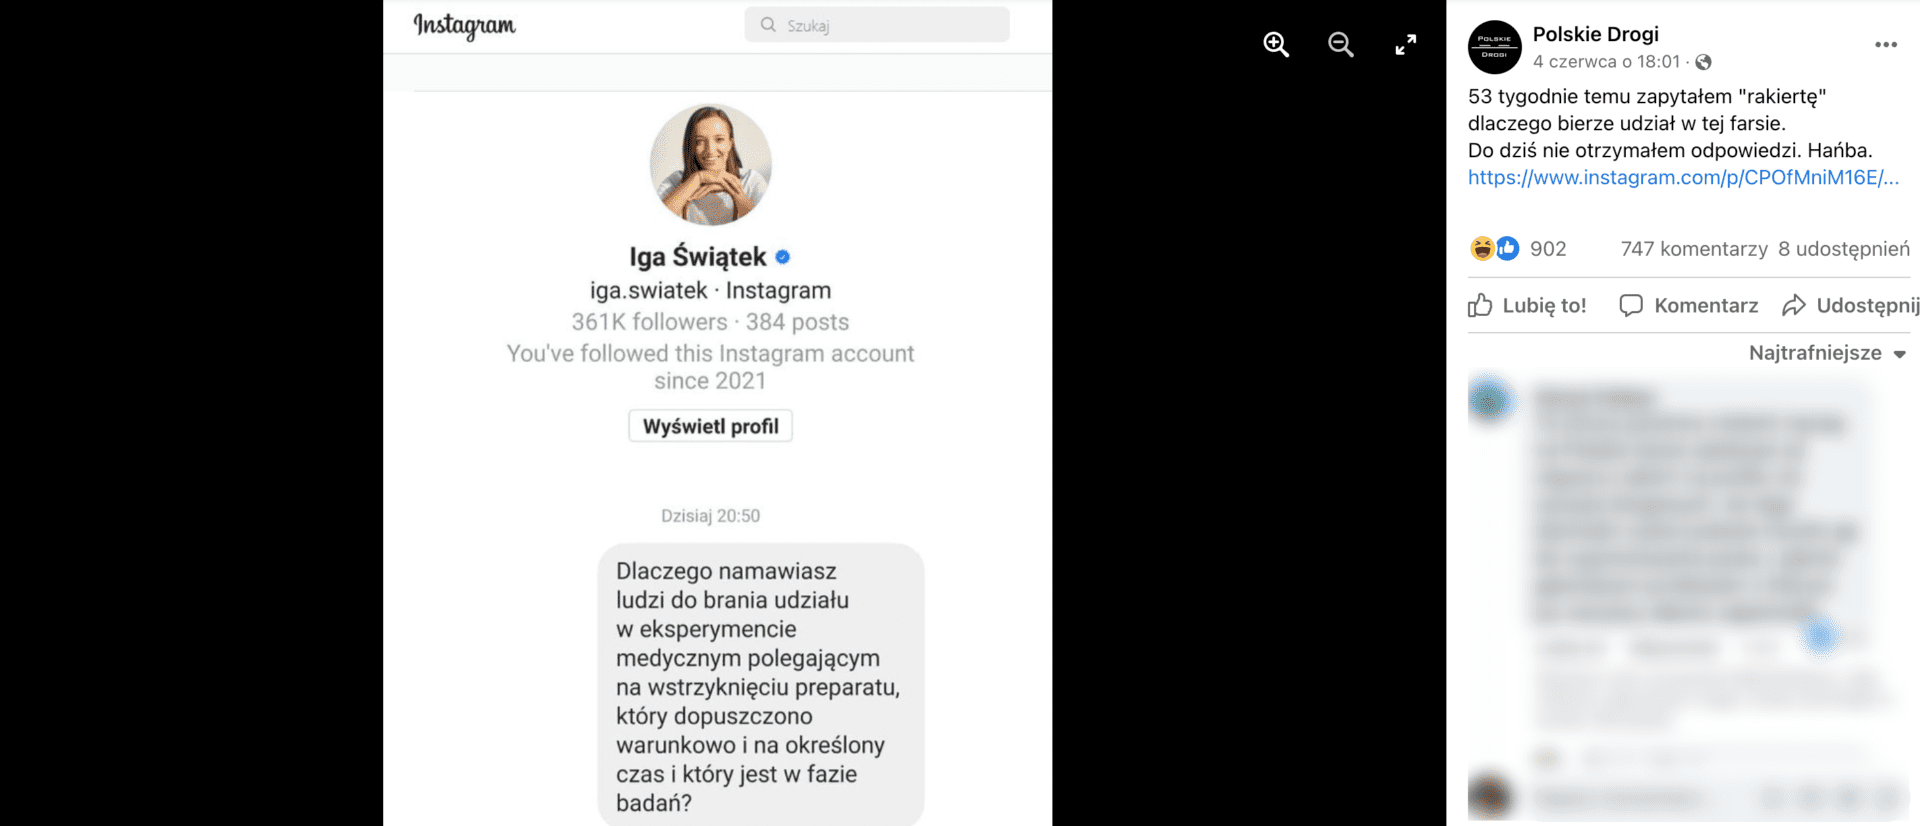 Zrzut ekranu z posta na Facebooku opublikowanego przez Polskie Drogi. Do wpisu dołączono zrzut ekranu przedstawiający wiadomość na Instagramie wysłaną do Igi Świątek.